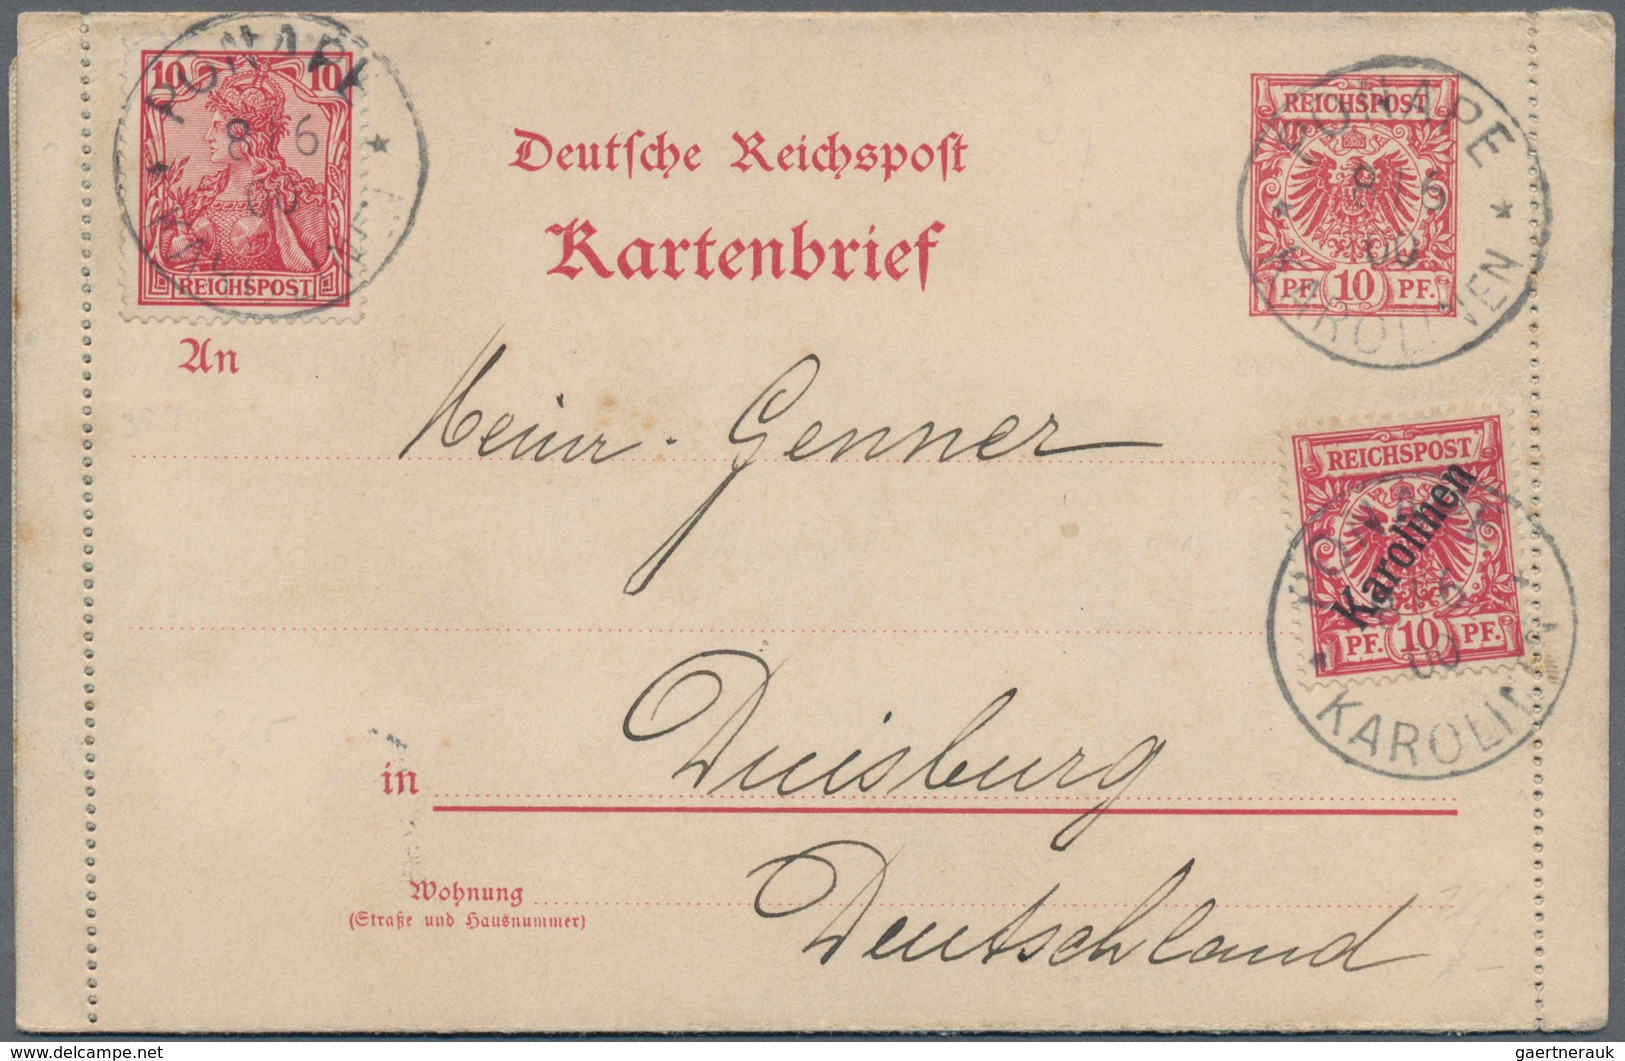 Deutsche Kolonien - Karolinen - Stempel: 1901/1912, drei Ausstellungsseiten mit vier Briefen/Ganzsac